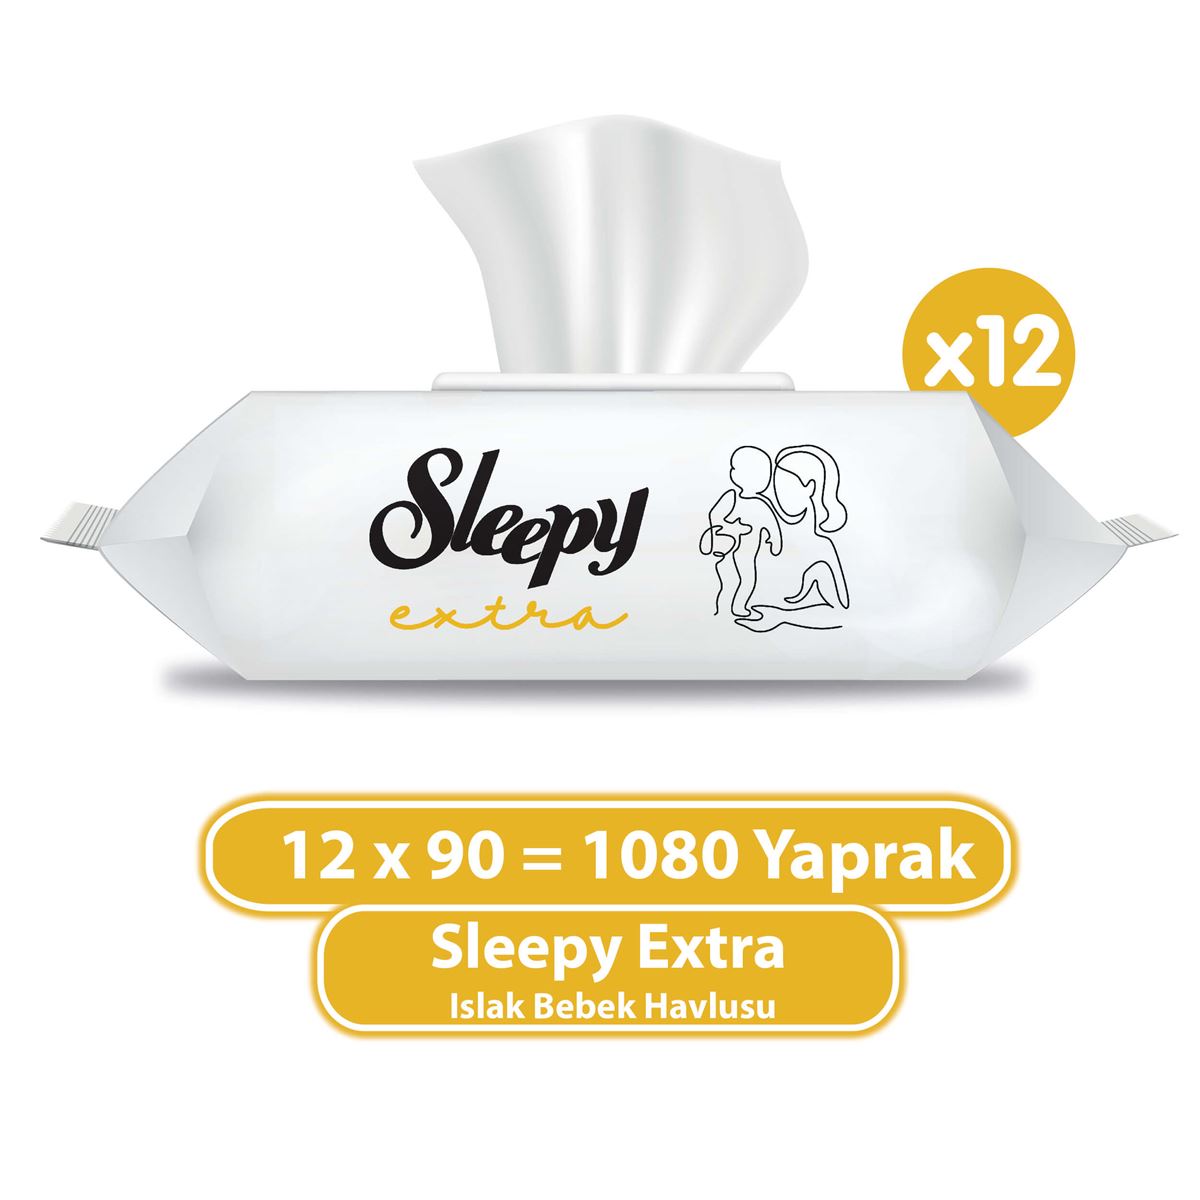 Sleepy Extra Islak Bebek Havlusu 12x90 (1080 Yaprak)